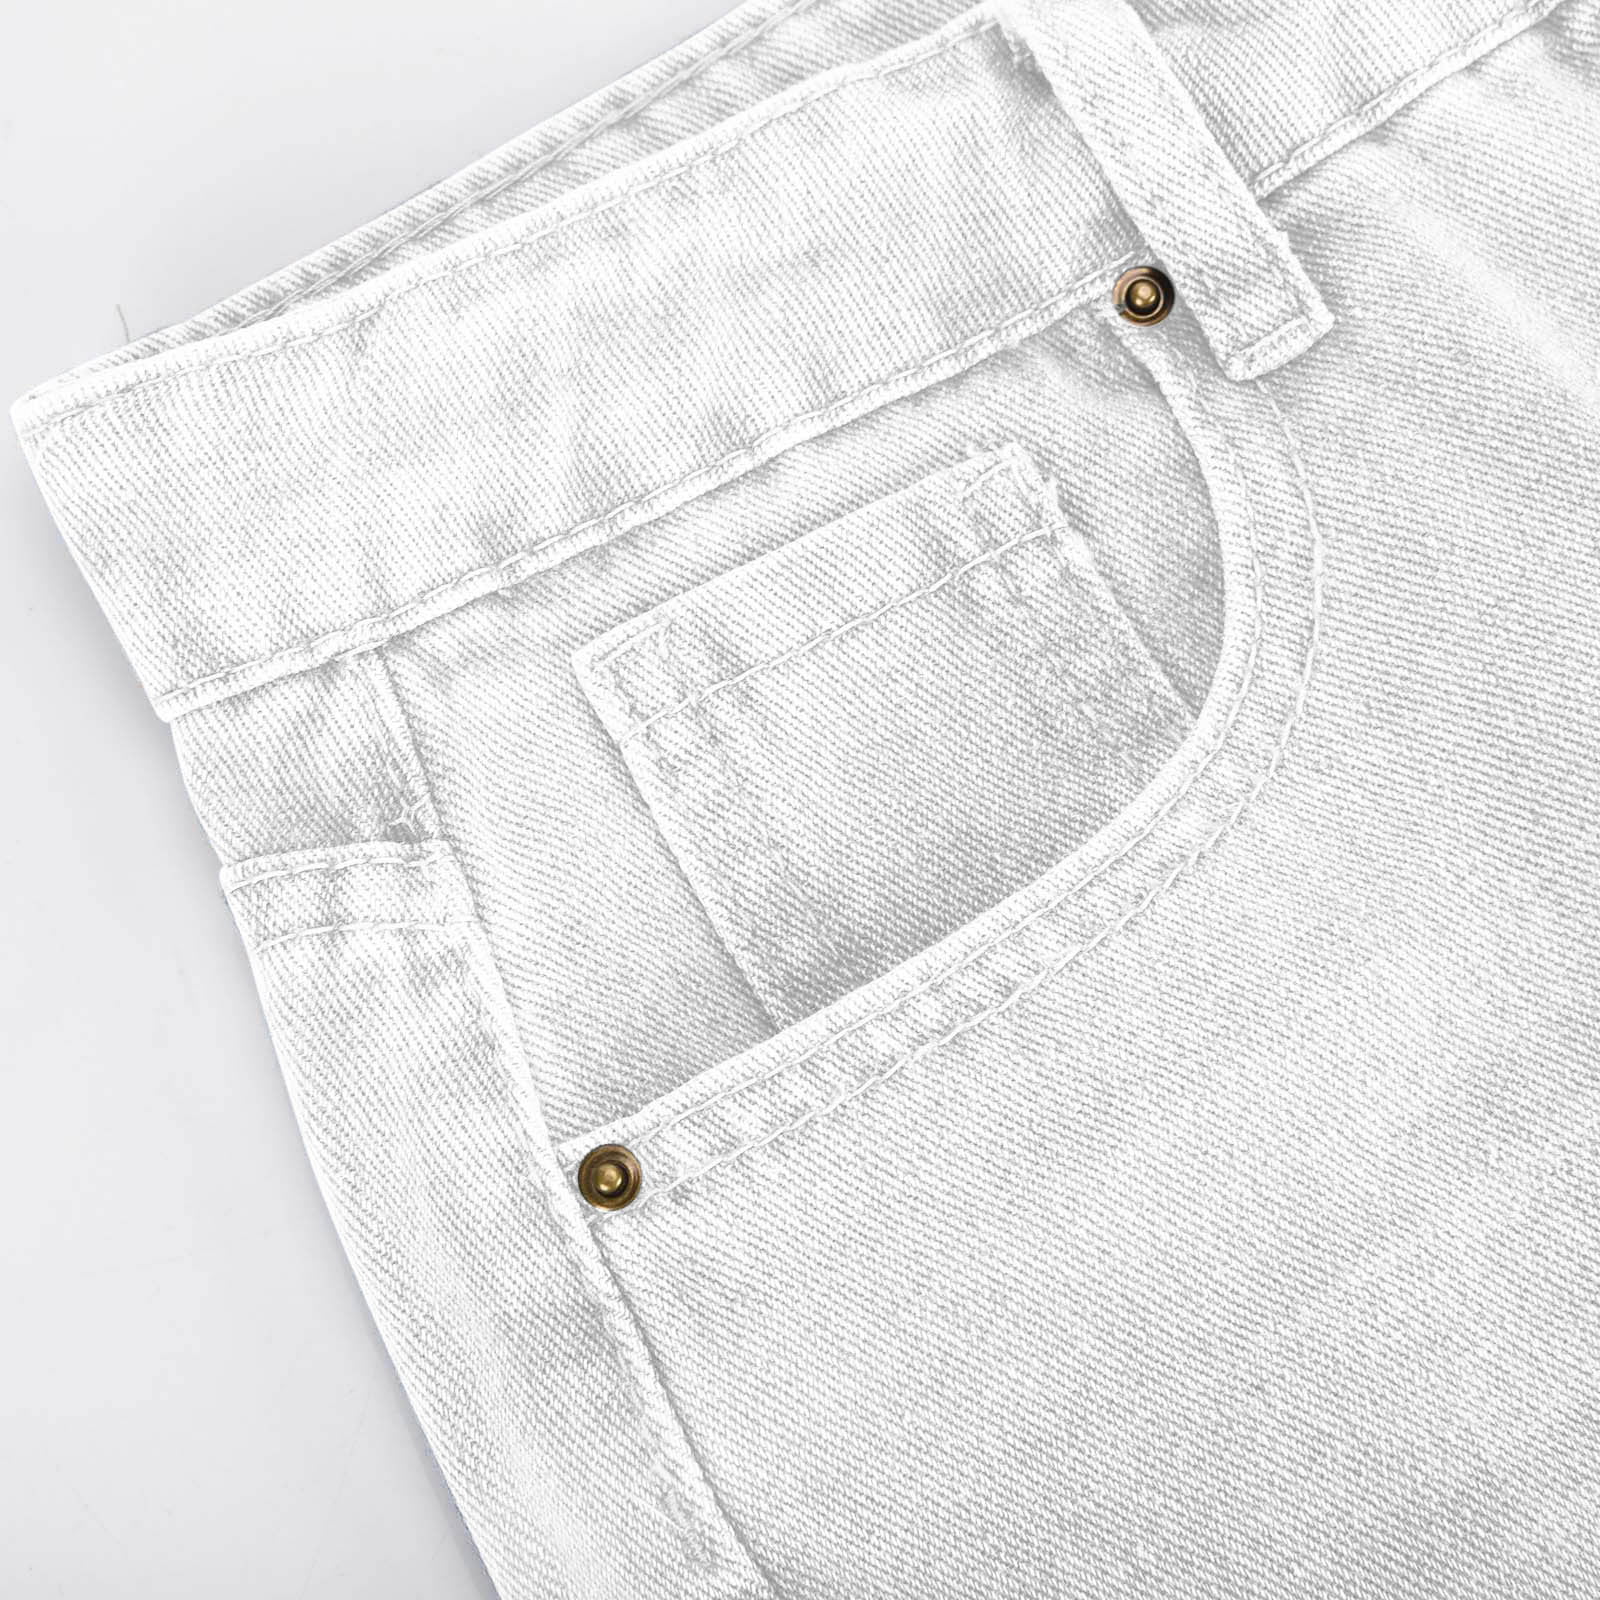  ABZEKH Jeans for Women - High Waist Slant Pocket